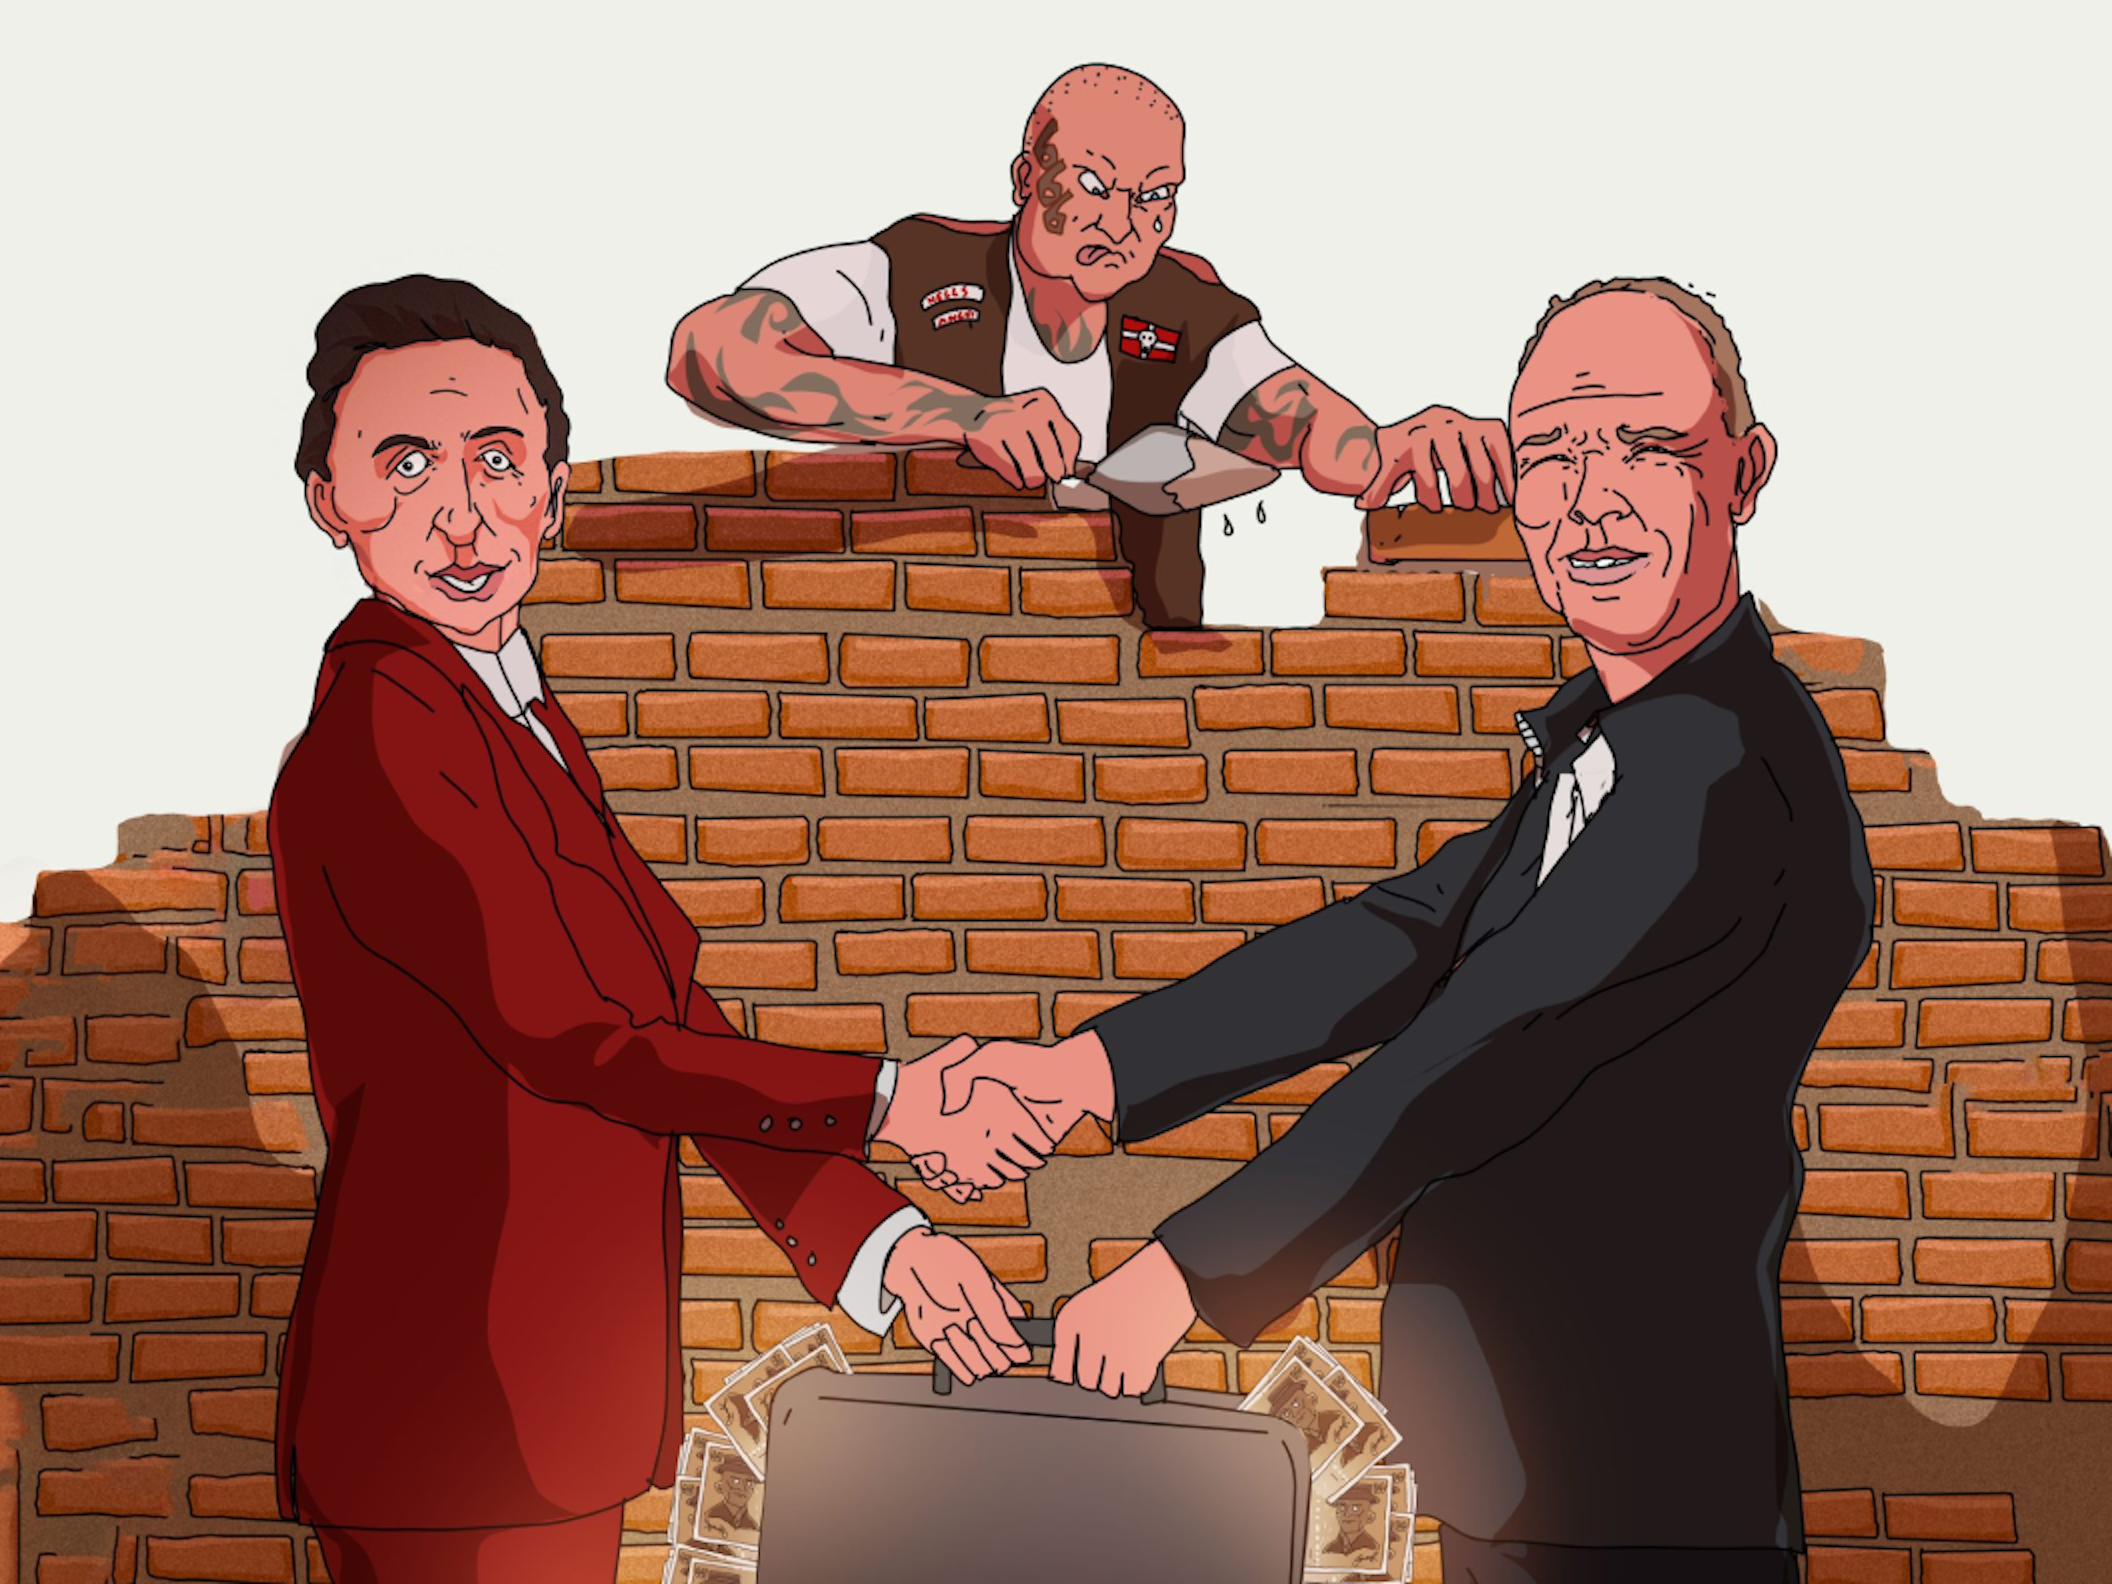 Frihedsbrevet illustration of corrupt politicians